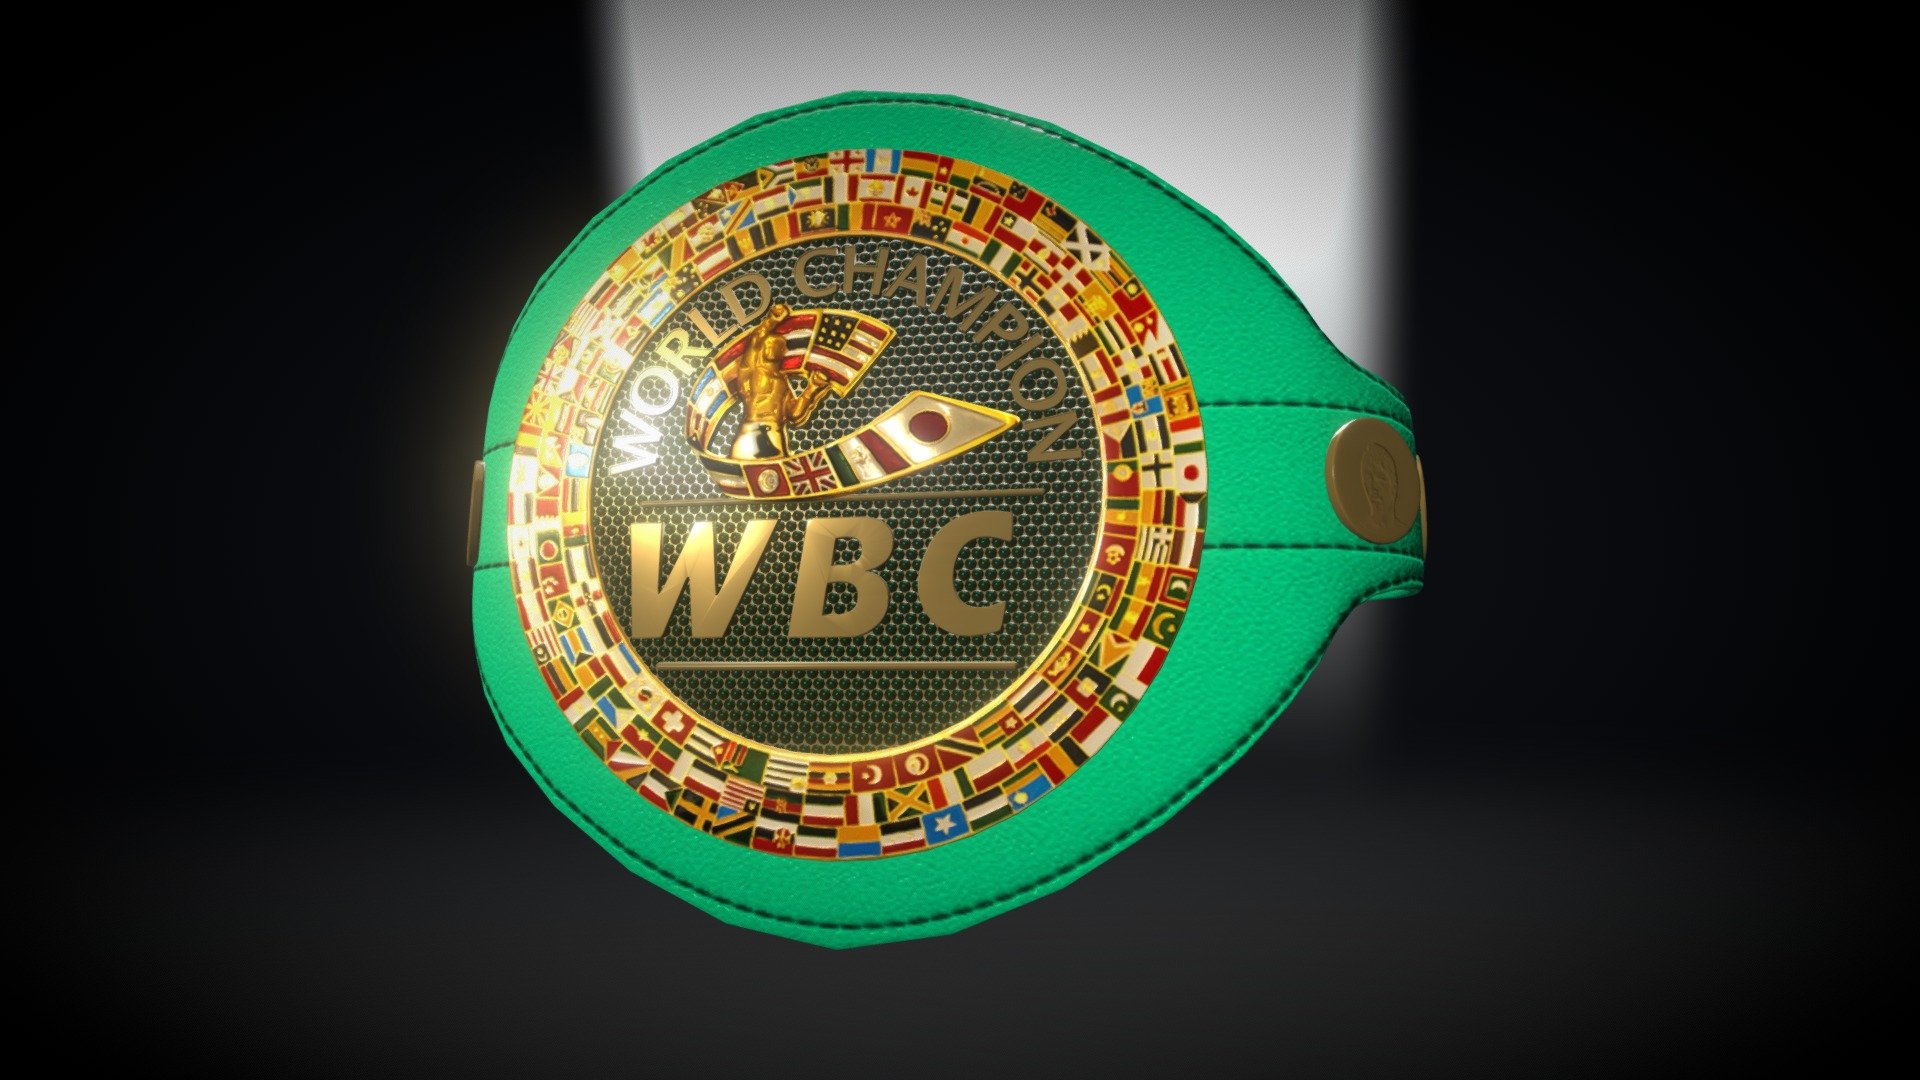 Cinturón WBC Pacquiao vs Mayweather 